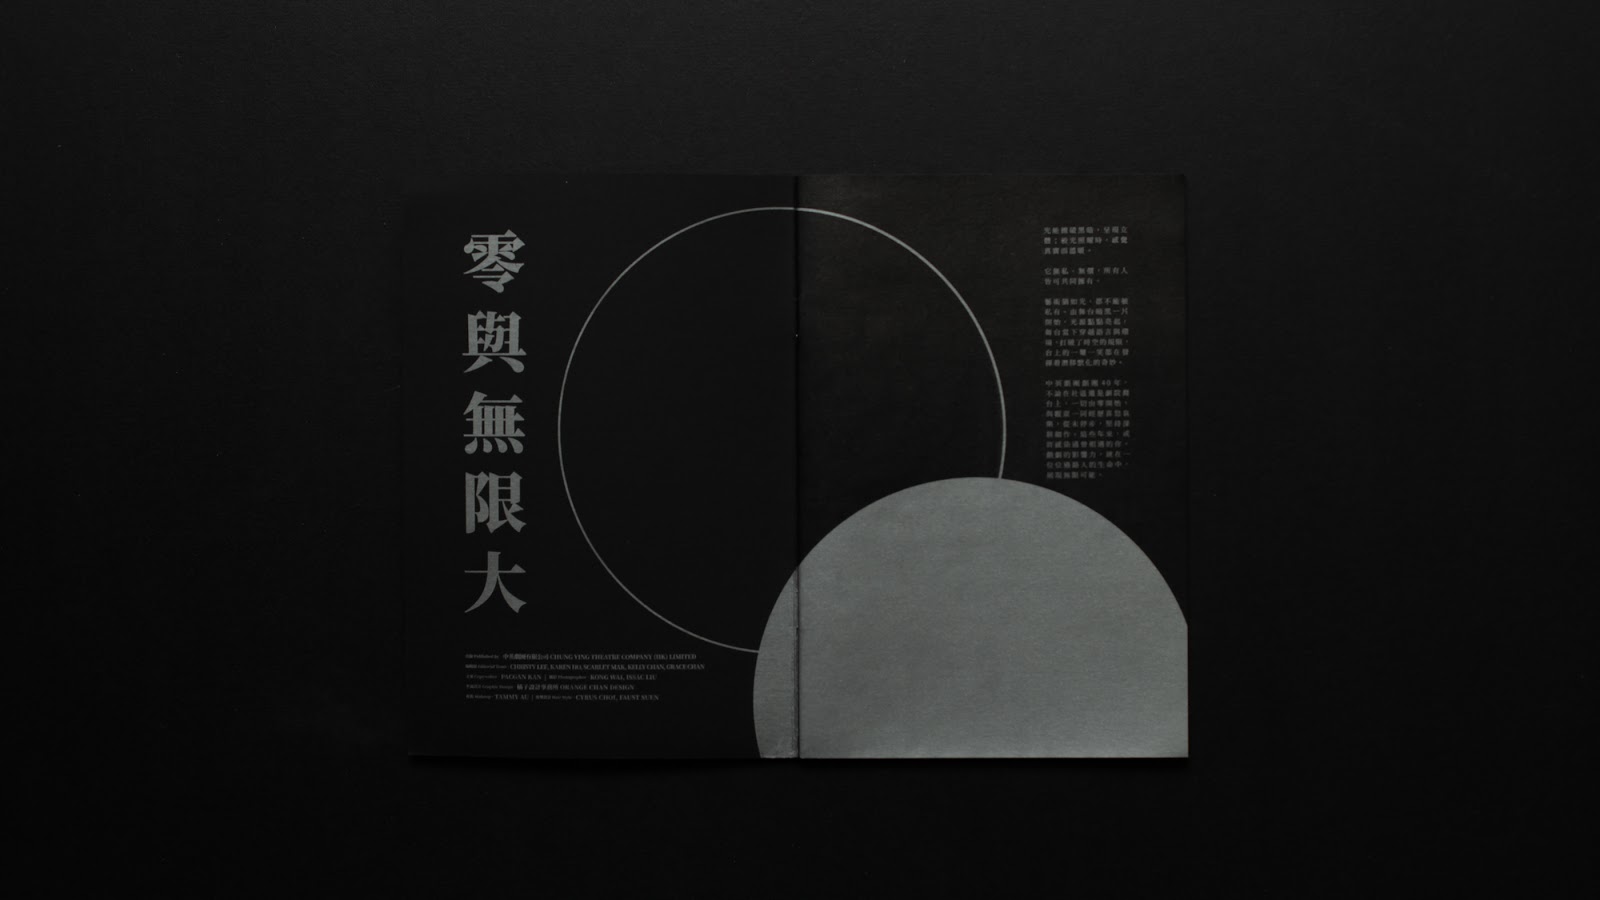 超酷的黑色主题 中英剧团(Chung Ying Theatre Company)演出画册设计